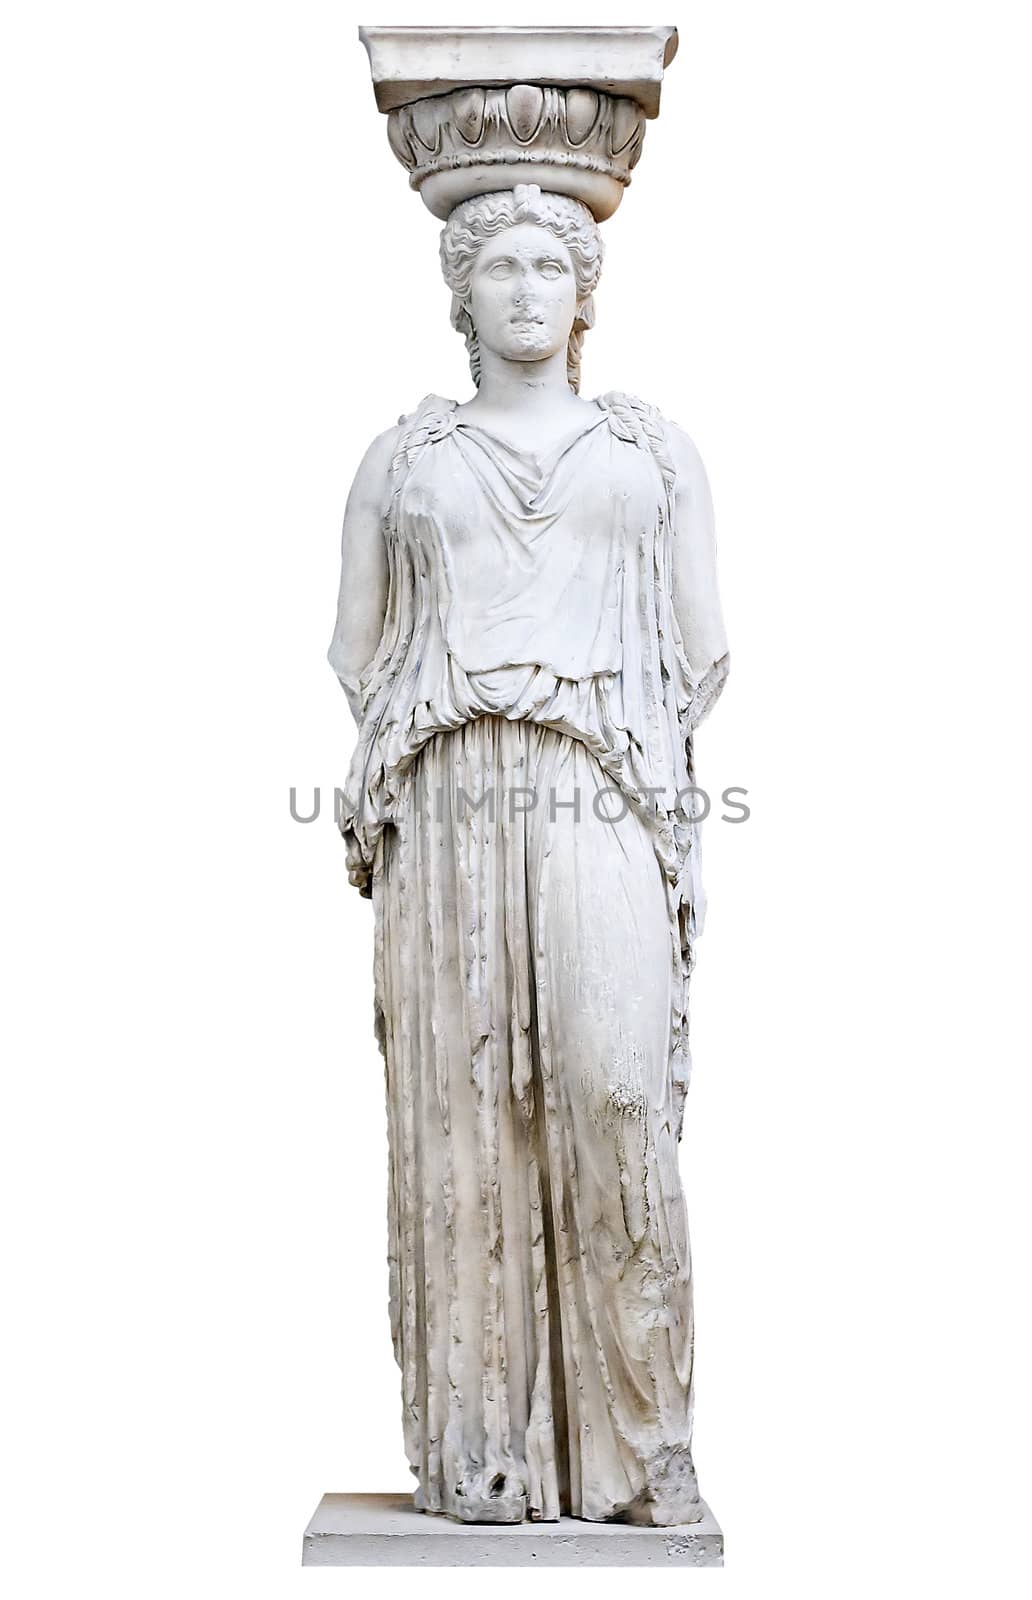 Greek Caryatid or column in a female form